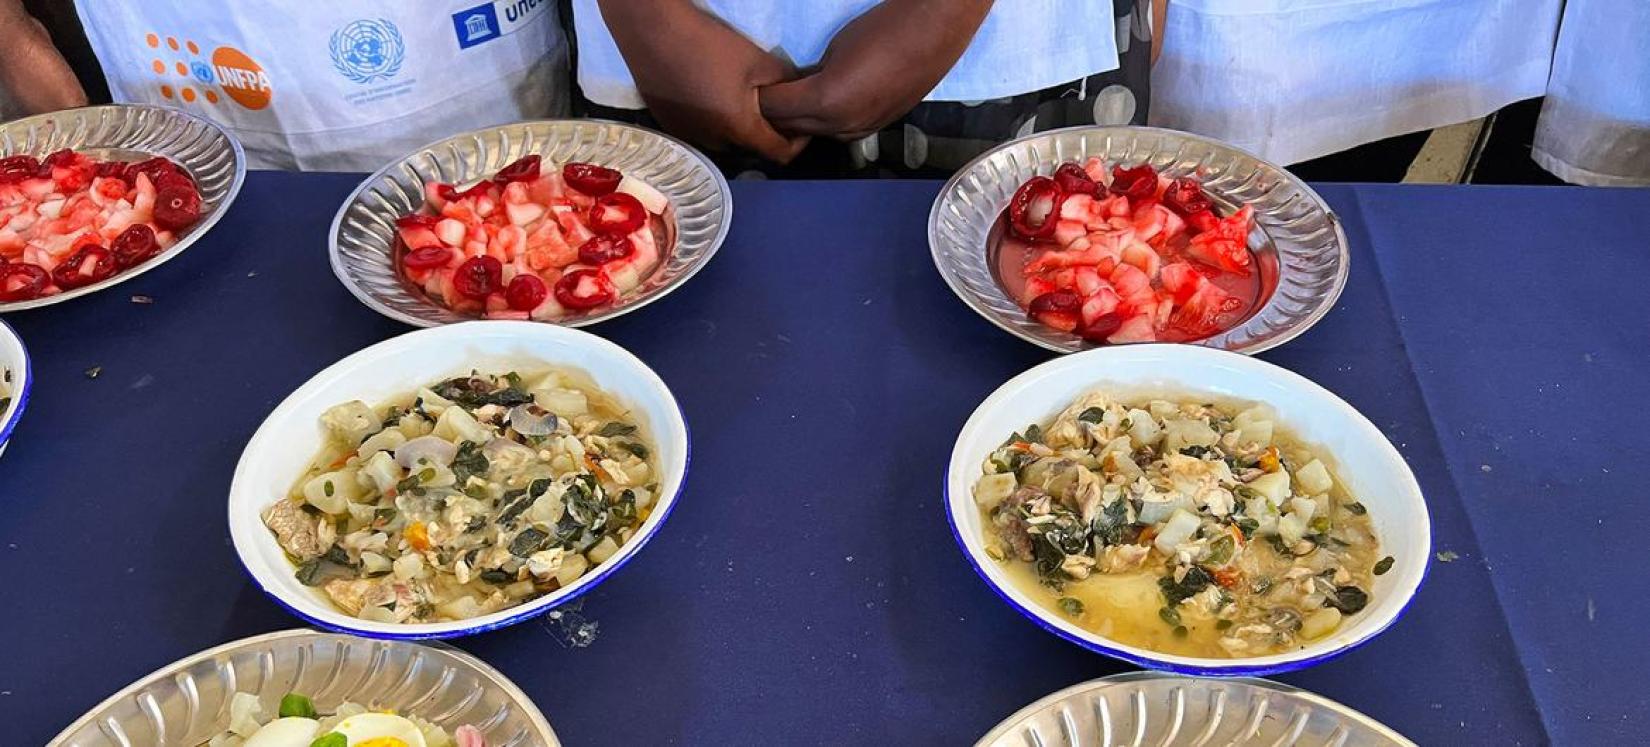 ONU Info/Daniel Dickinson Des écoliers préparent un repas à trois plats dans le cadre du concours Tsikonina.